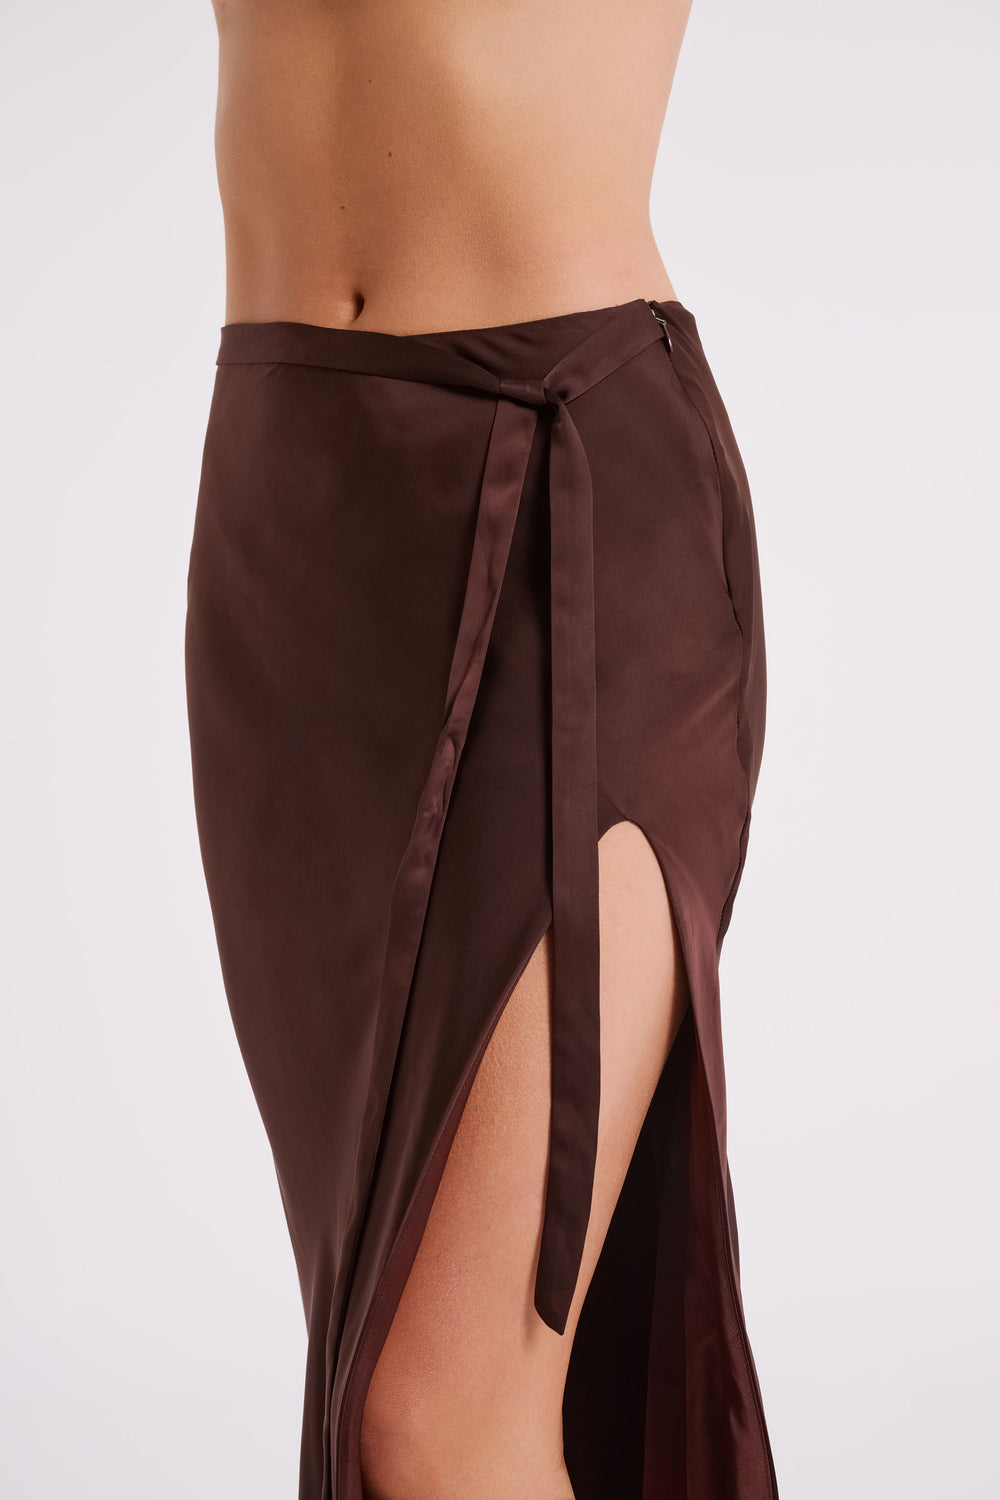 Edie Satin Midi Skirt With Tie - Dark Chocolate